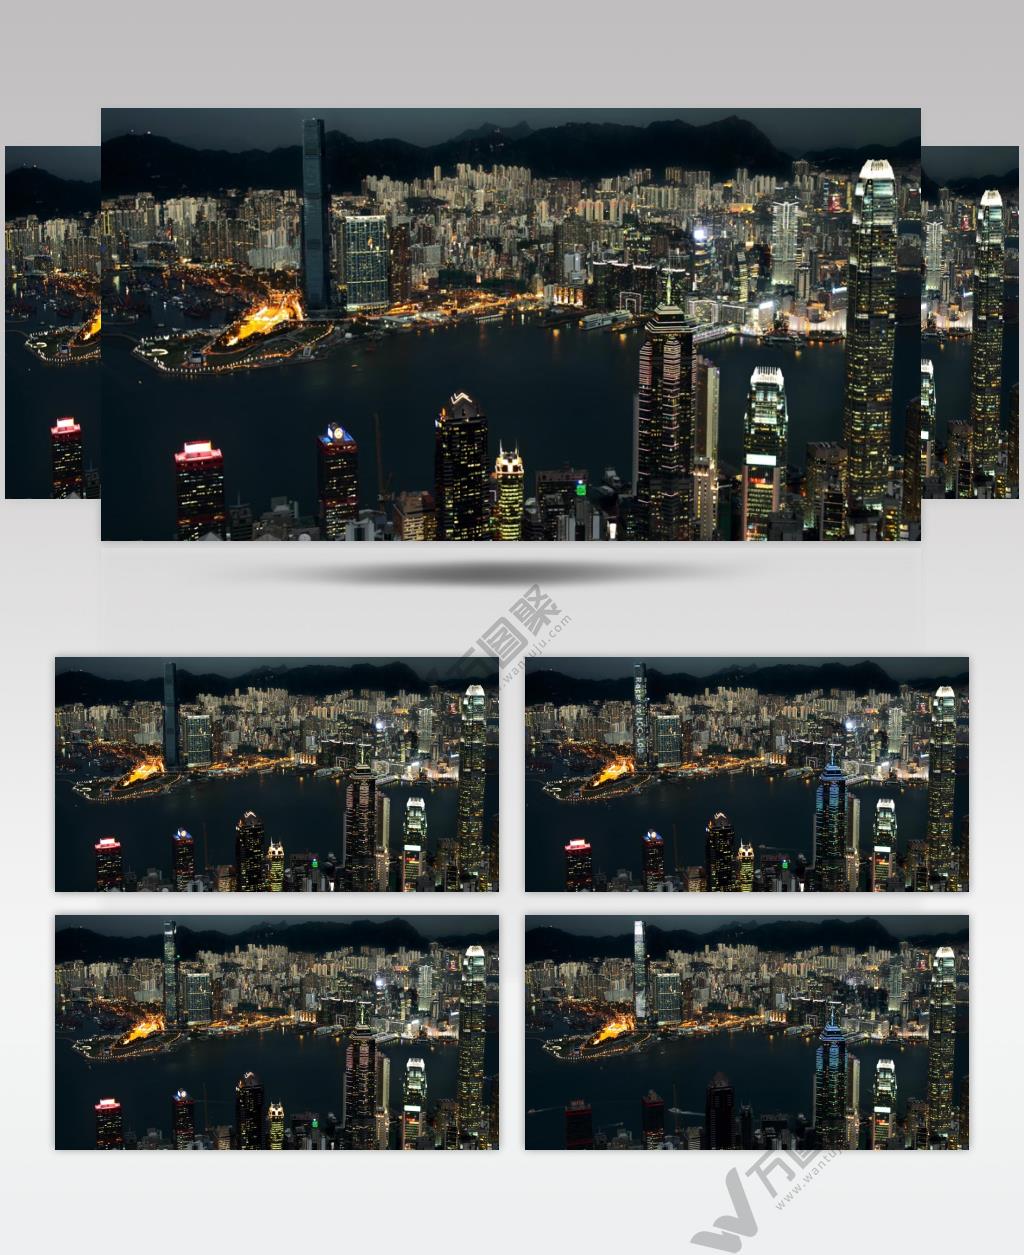 中国上海广州城市地标建筑高端办公楼夜景航拍宣传片高清视频素材城市夜景13